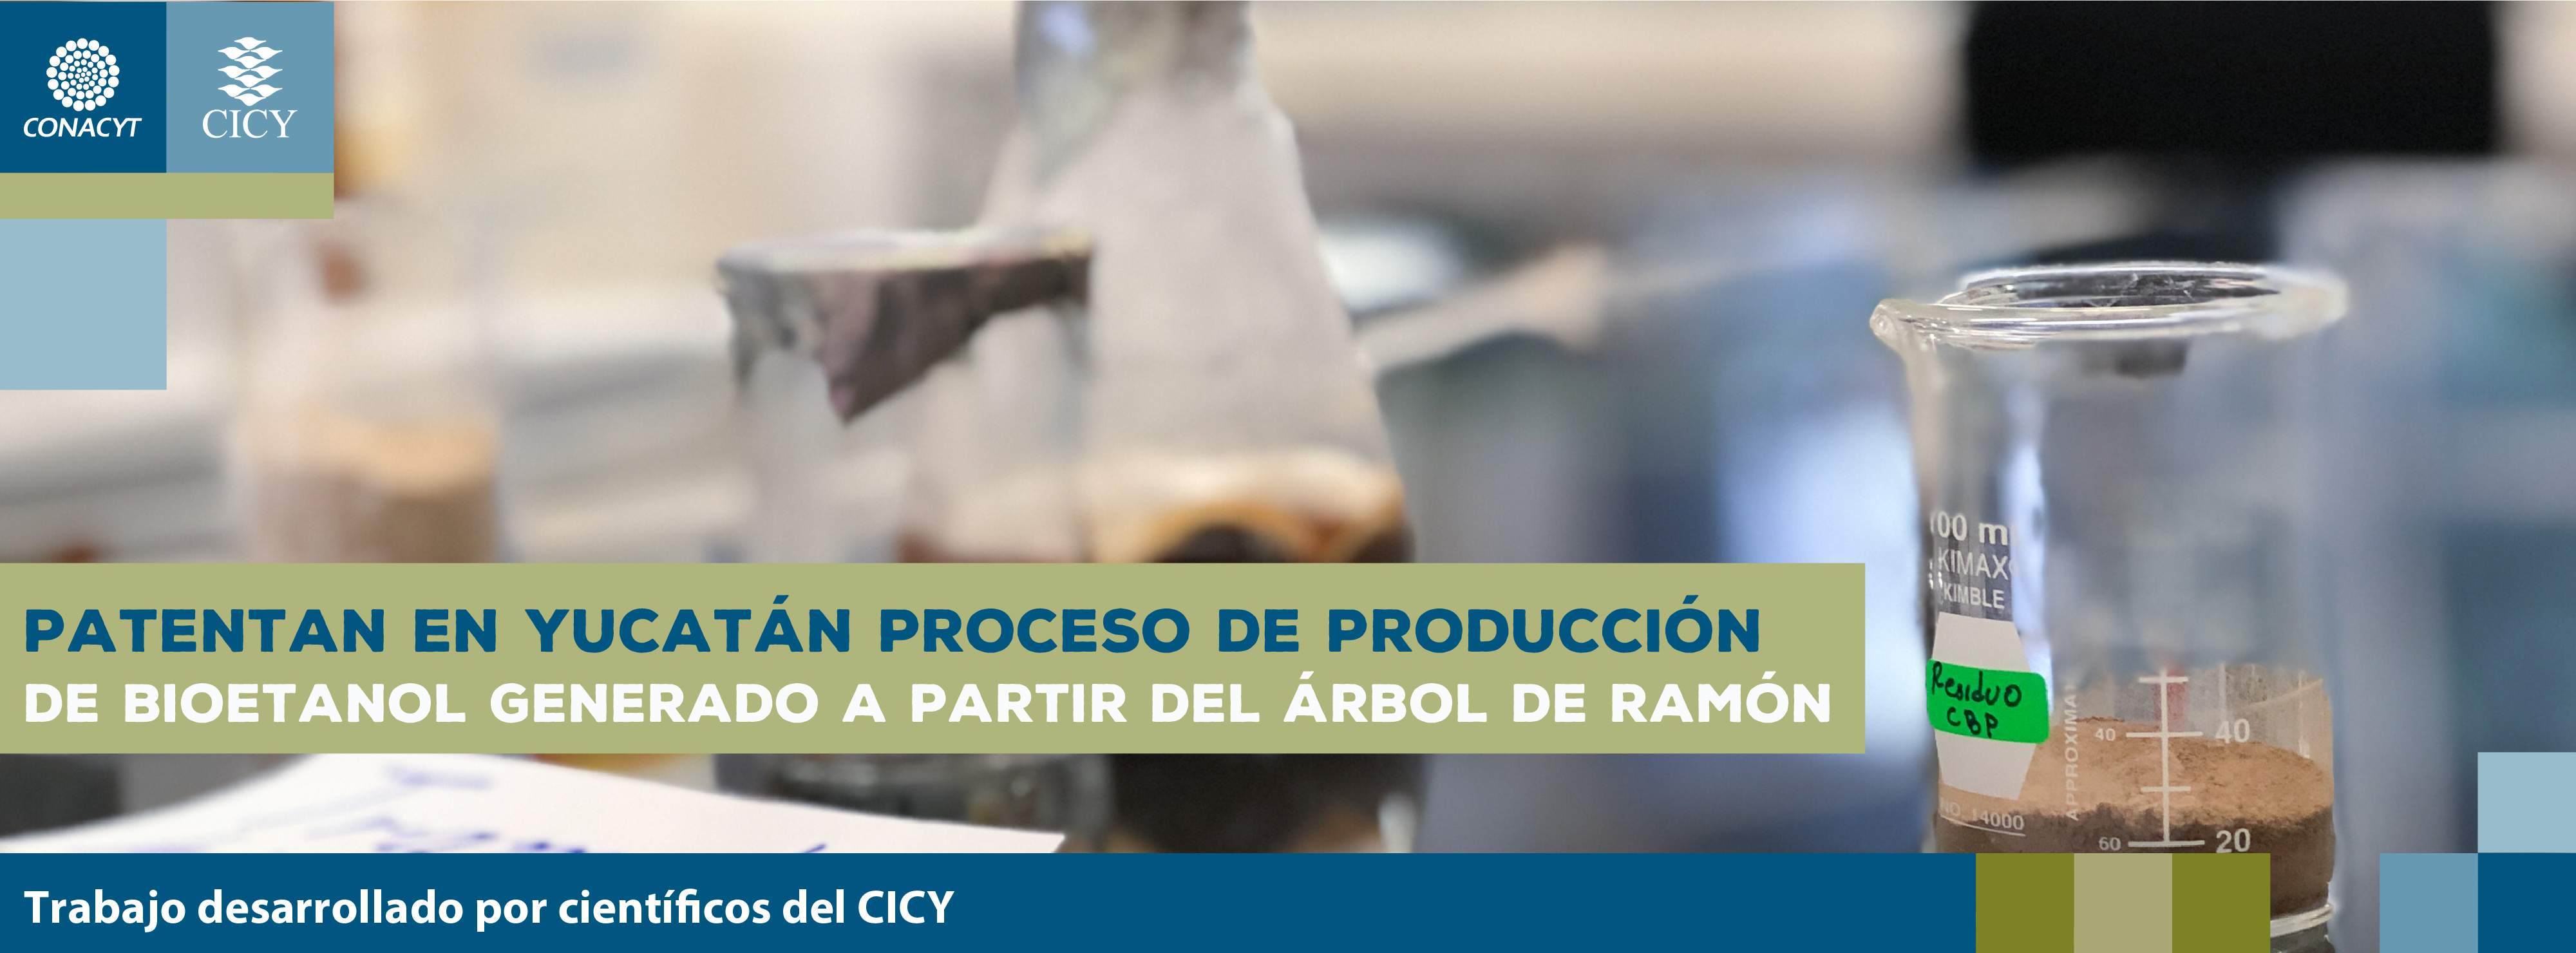 Patentan en Yucatán proceso de producción de bioetanol generado a partir del árbol de ramón